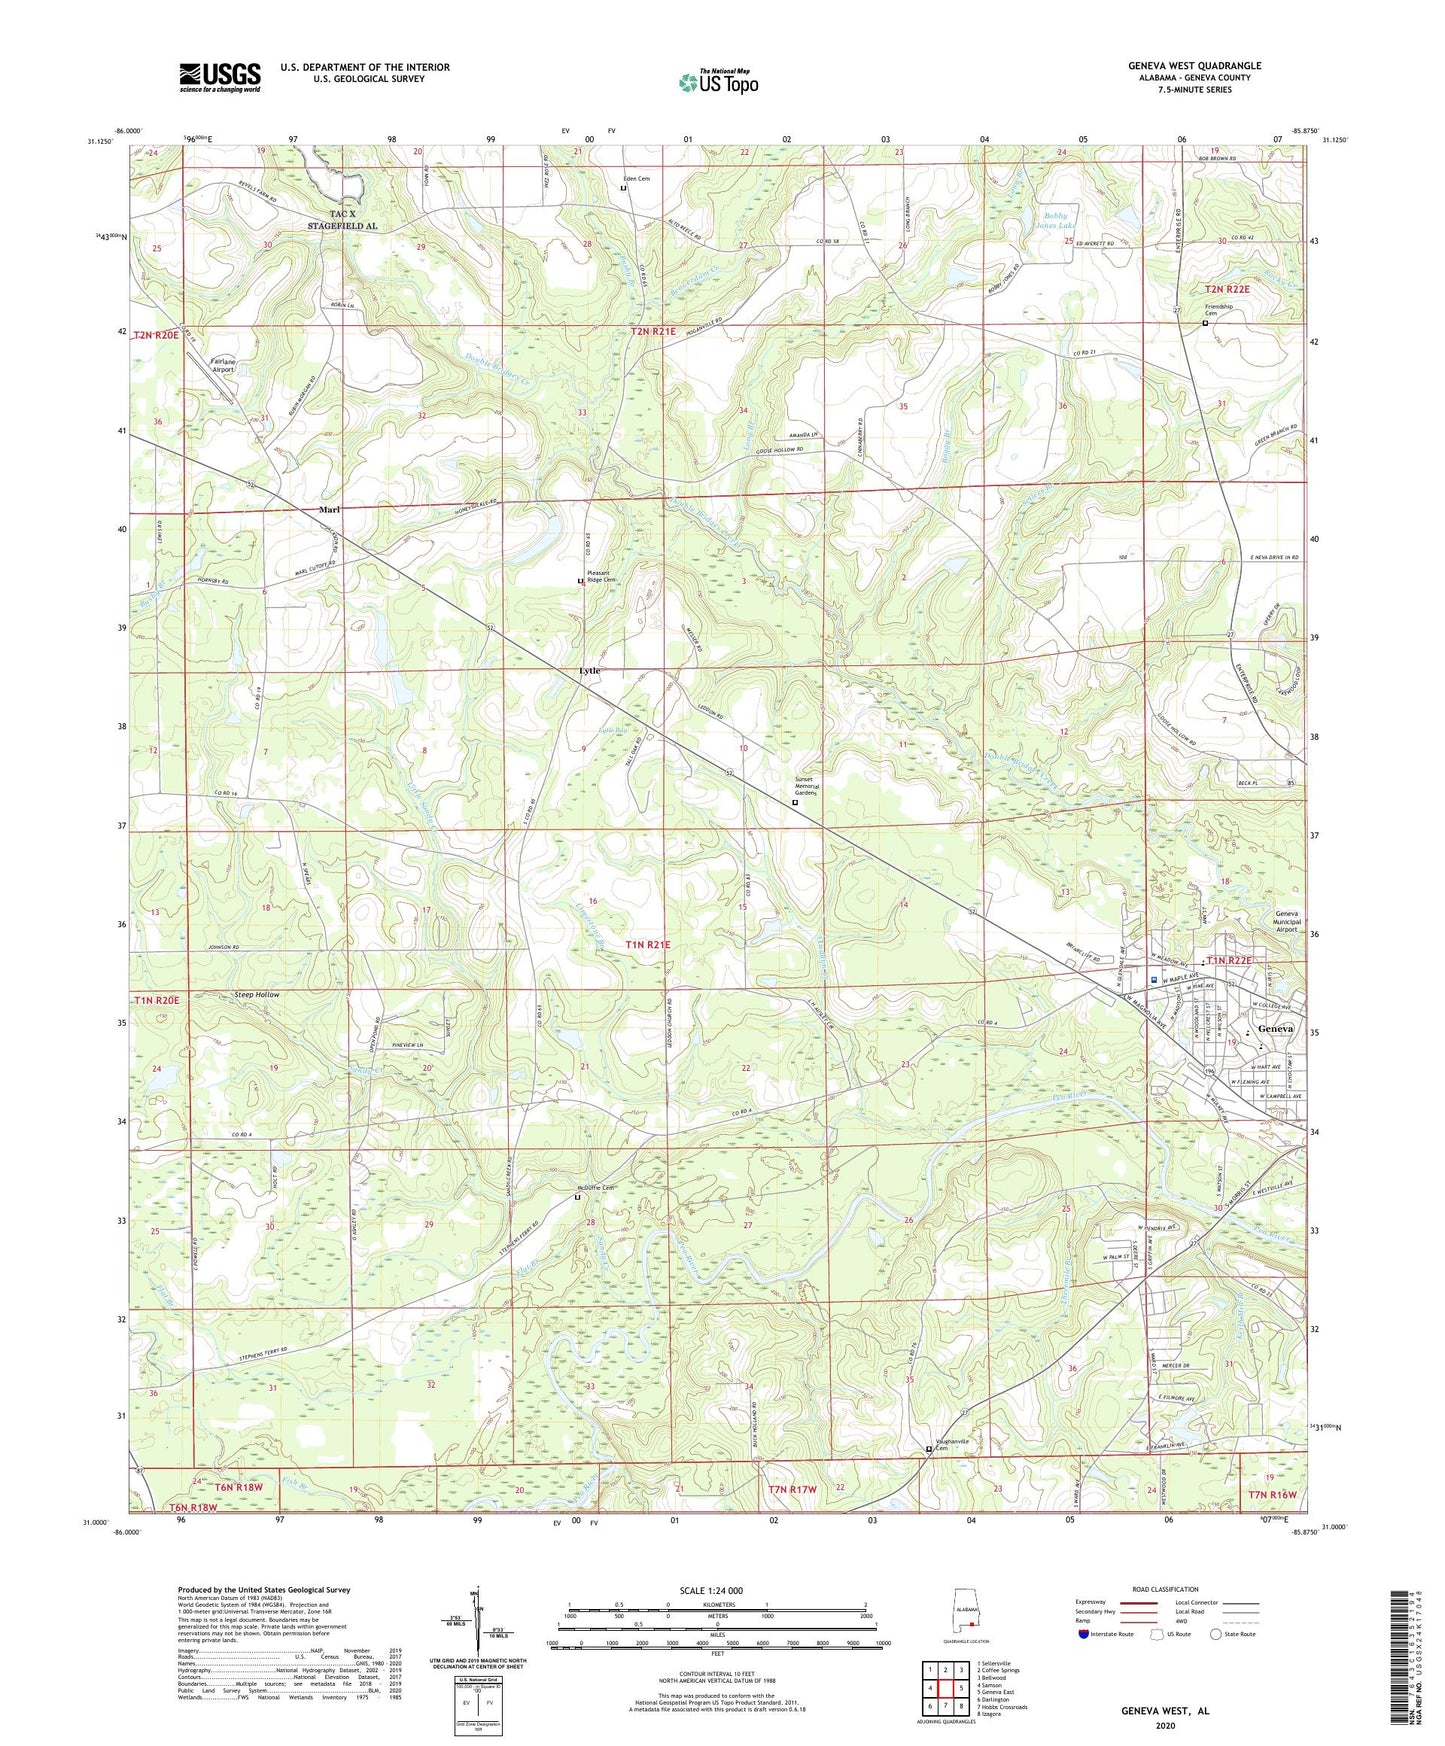 Geneva West Alabama US Topo Map Image